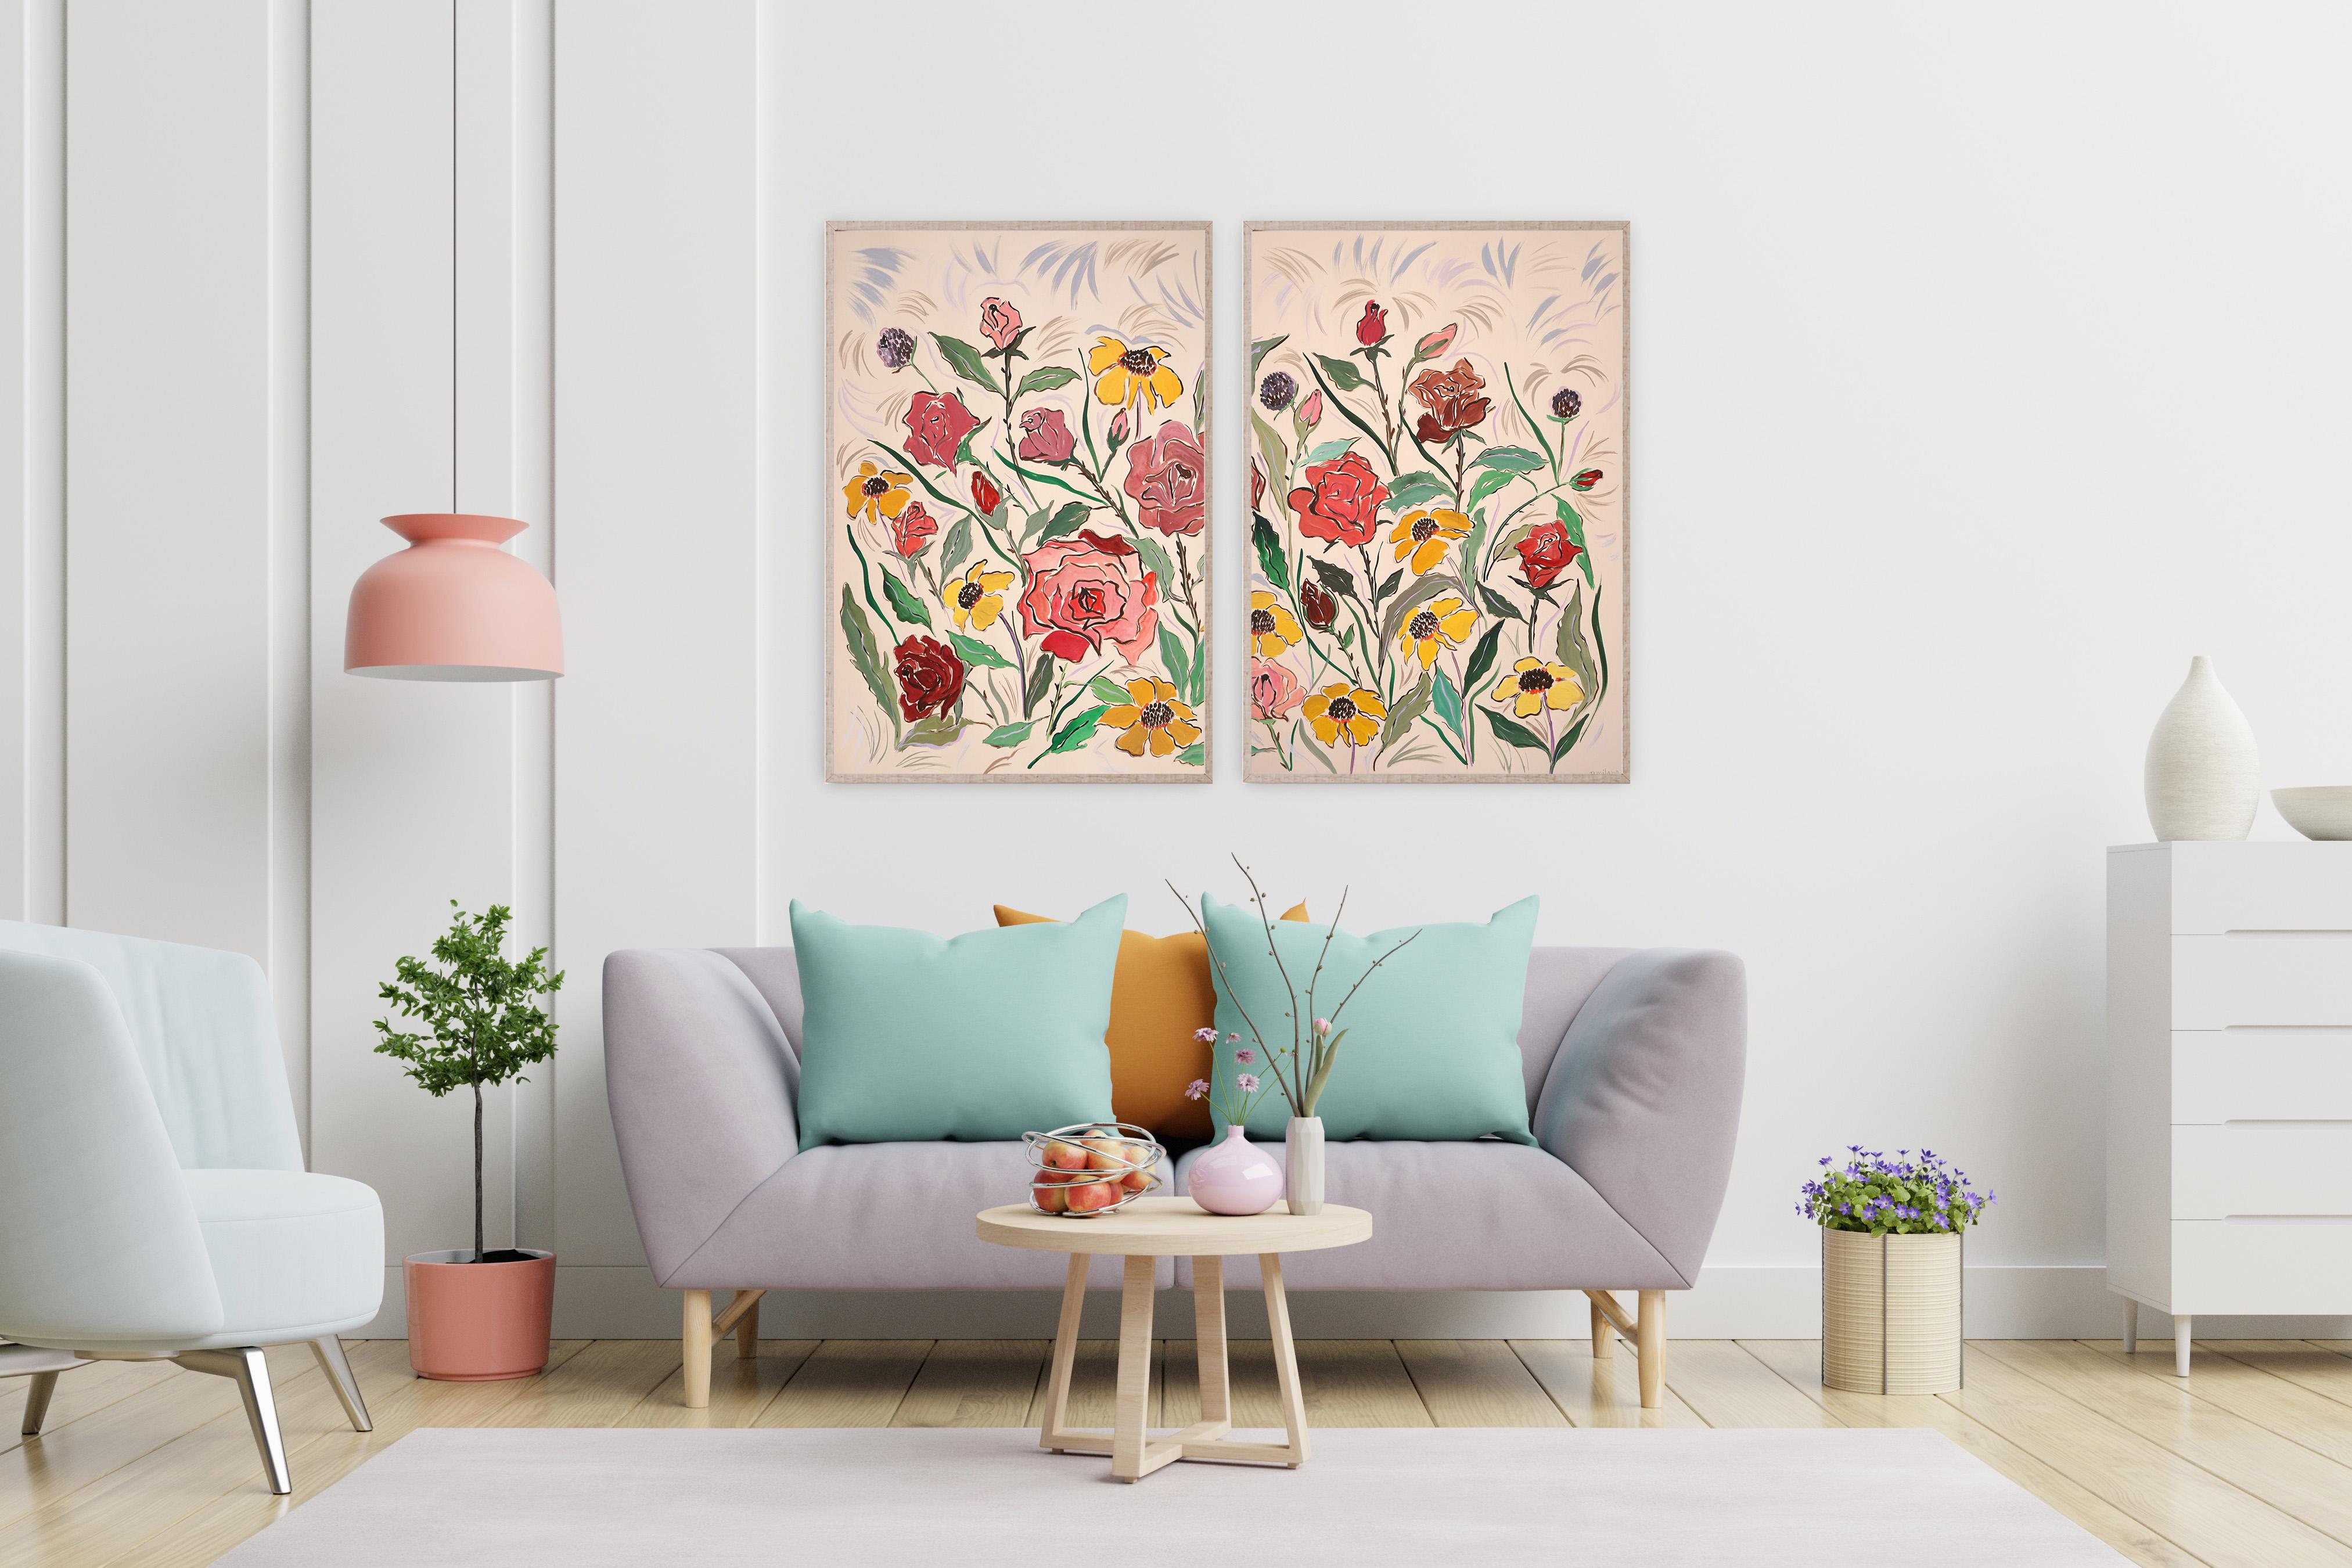 Diptyque Margaritas rose, rose et jaune, gestes de style illustration  - Painting de Romina Milano